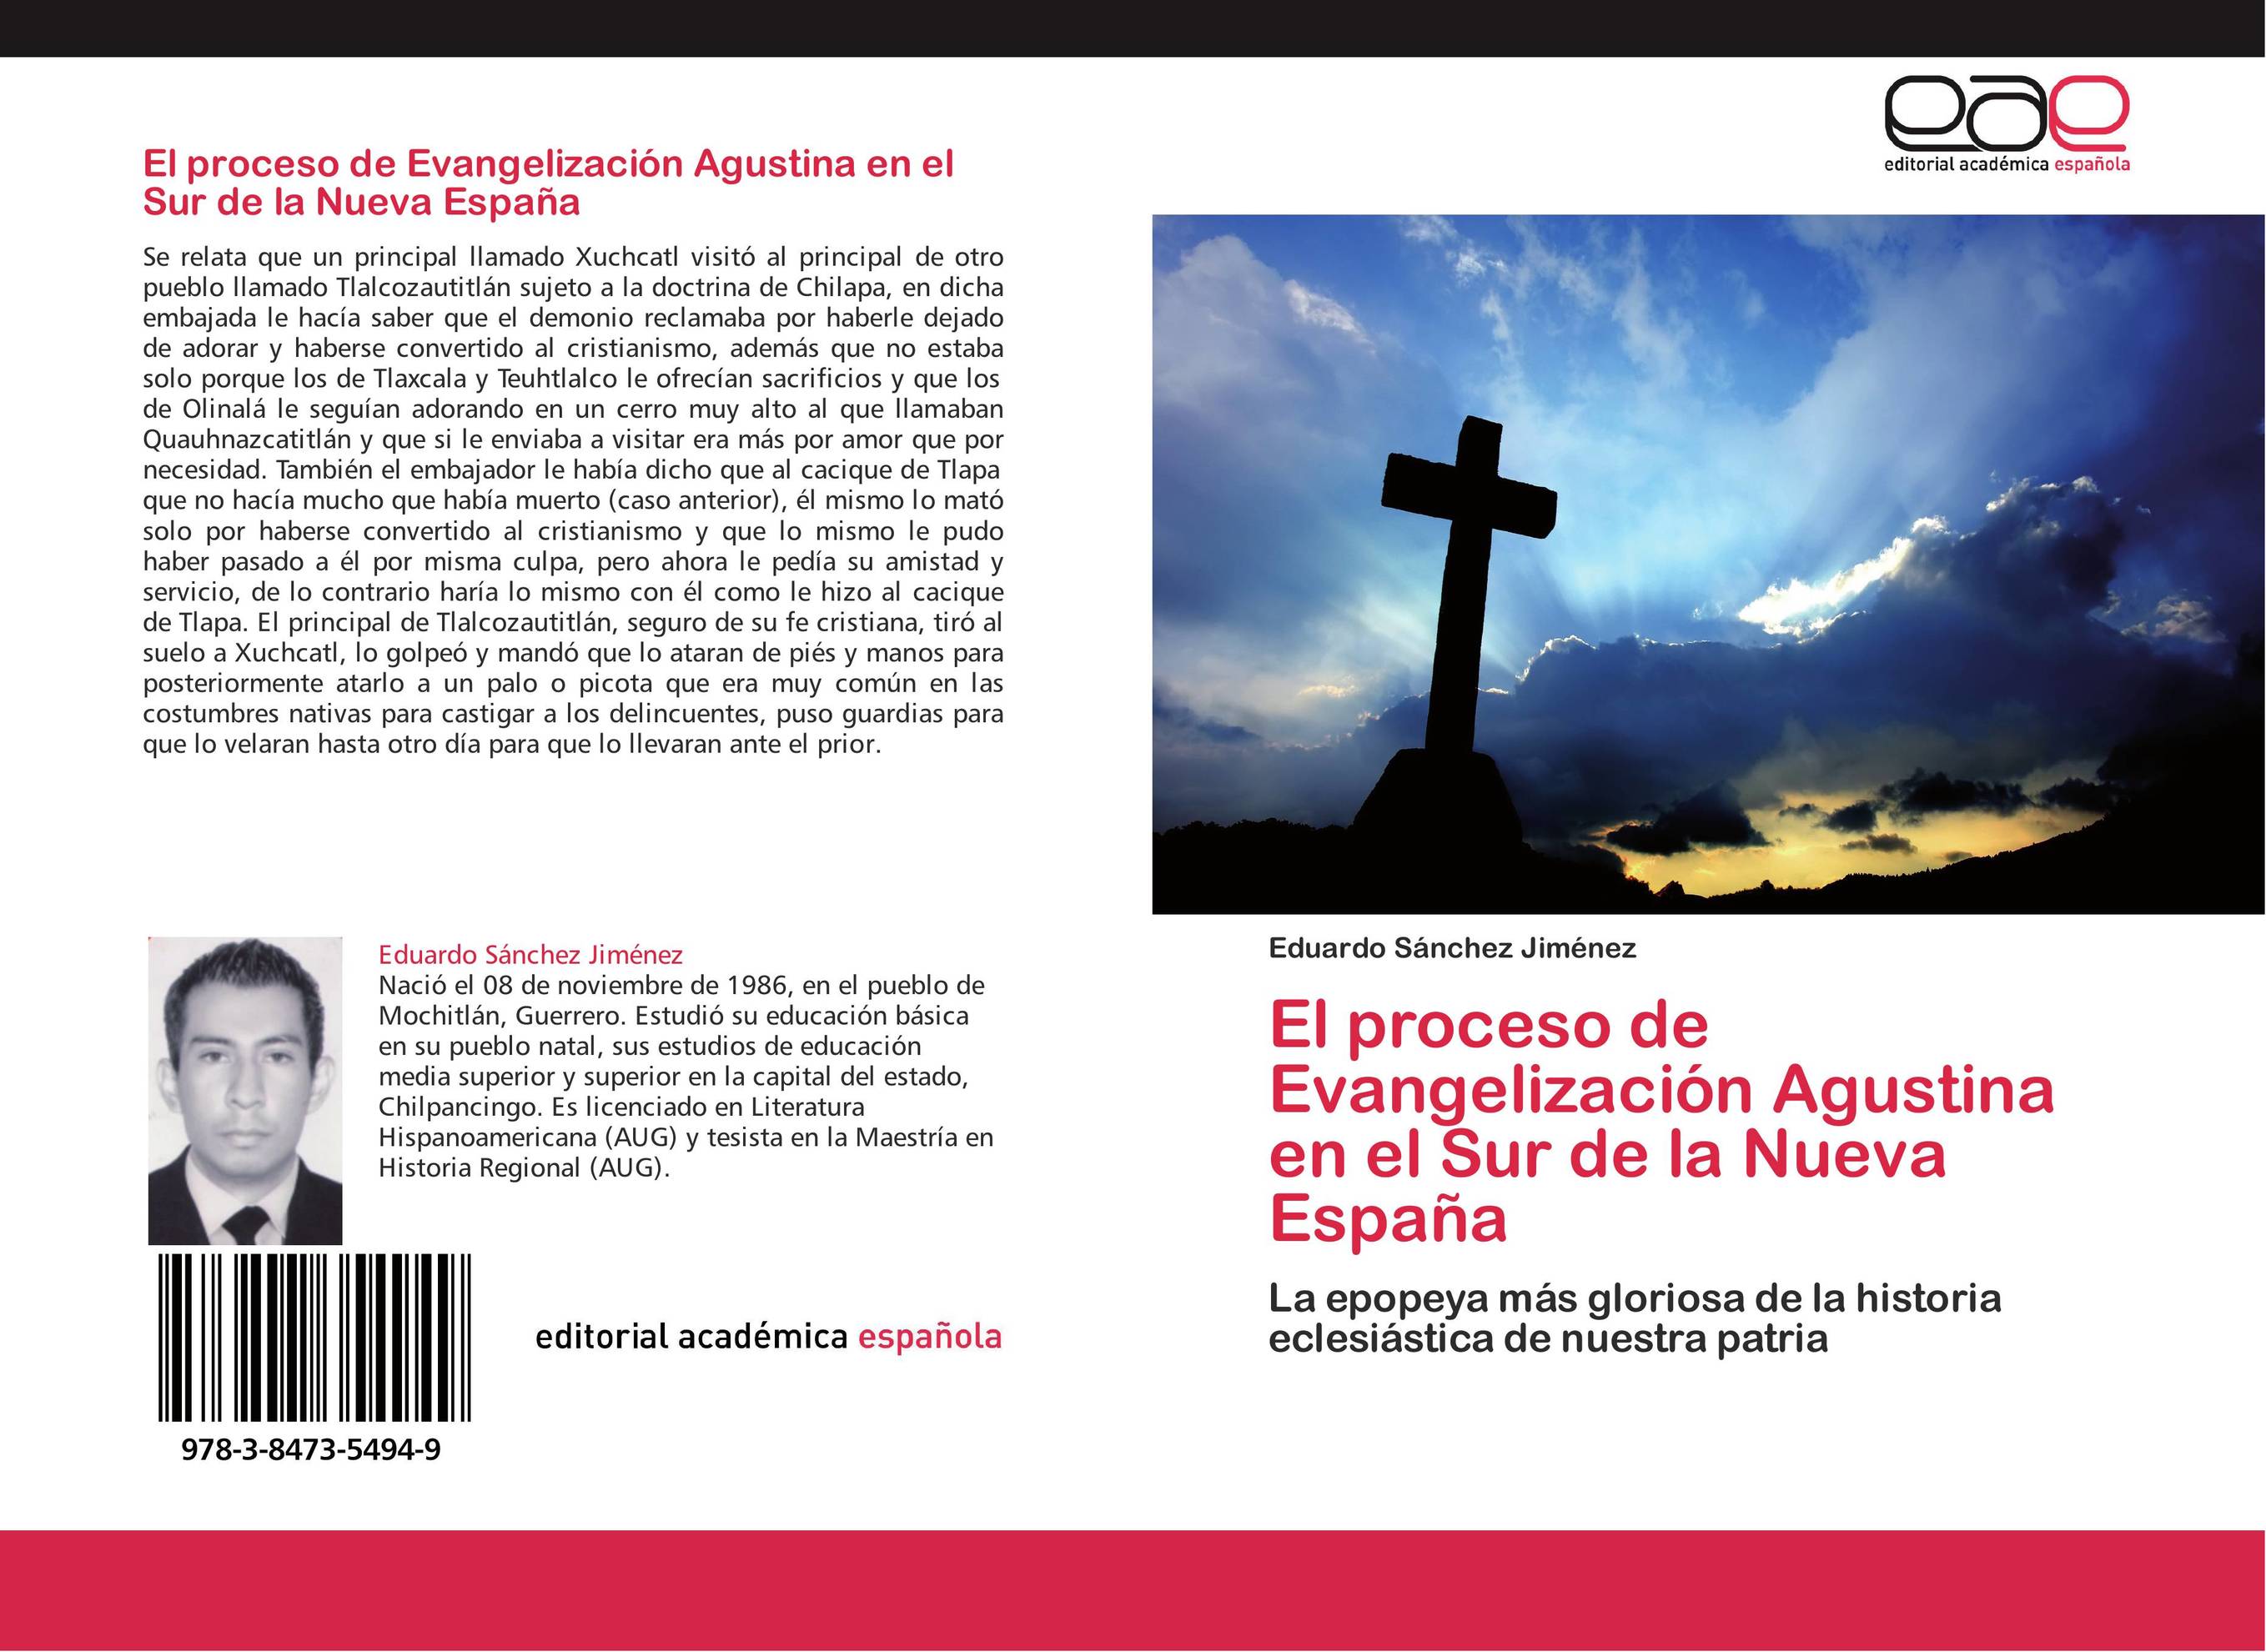 El proceso de Evangelización Agustina en el Sur de la Nueva España